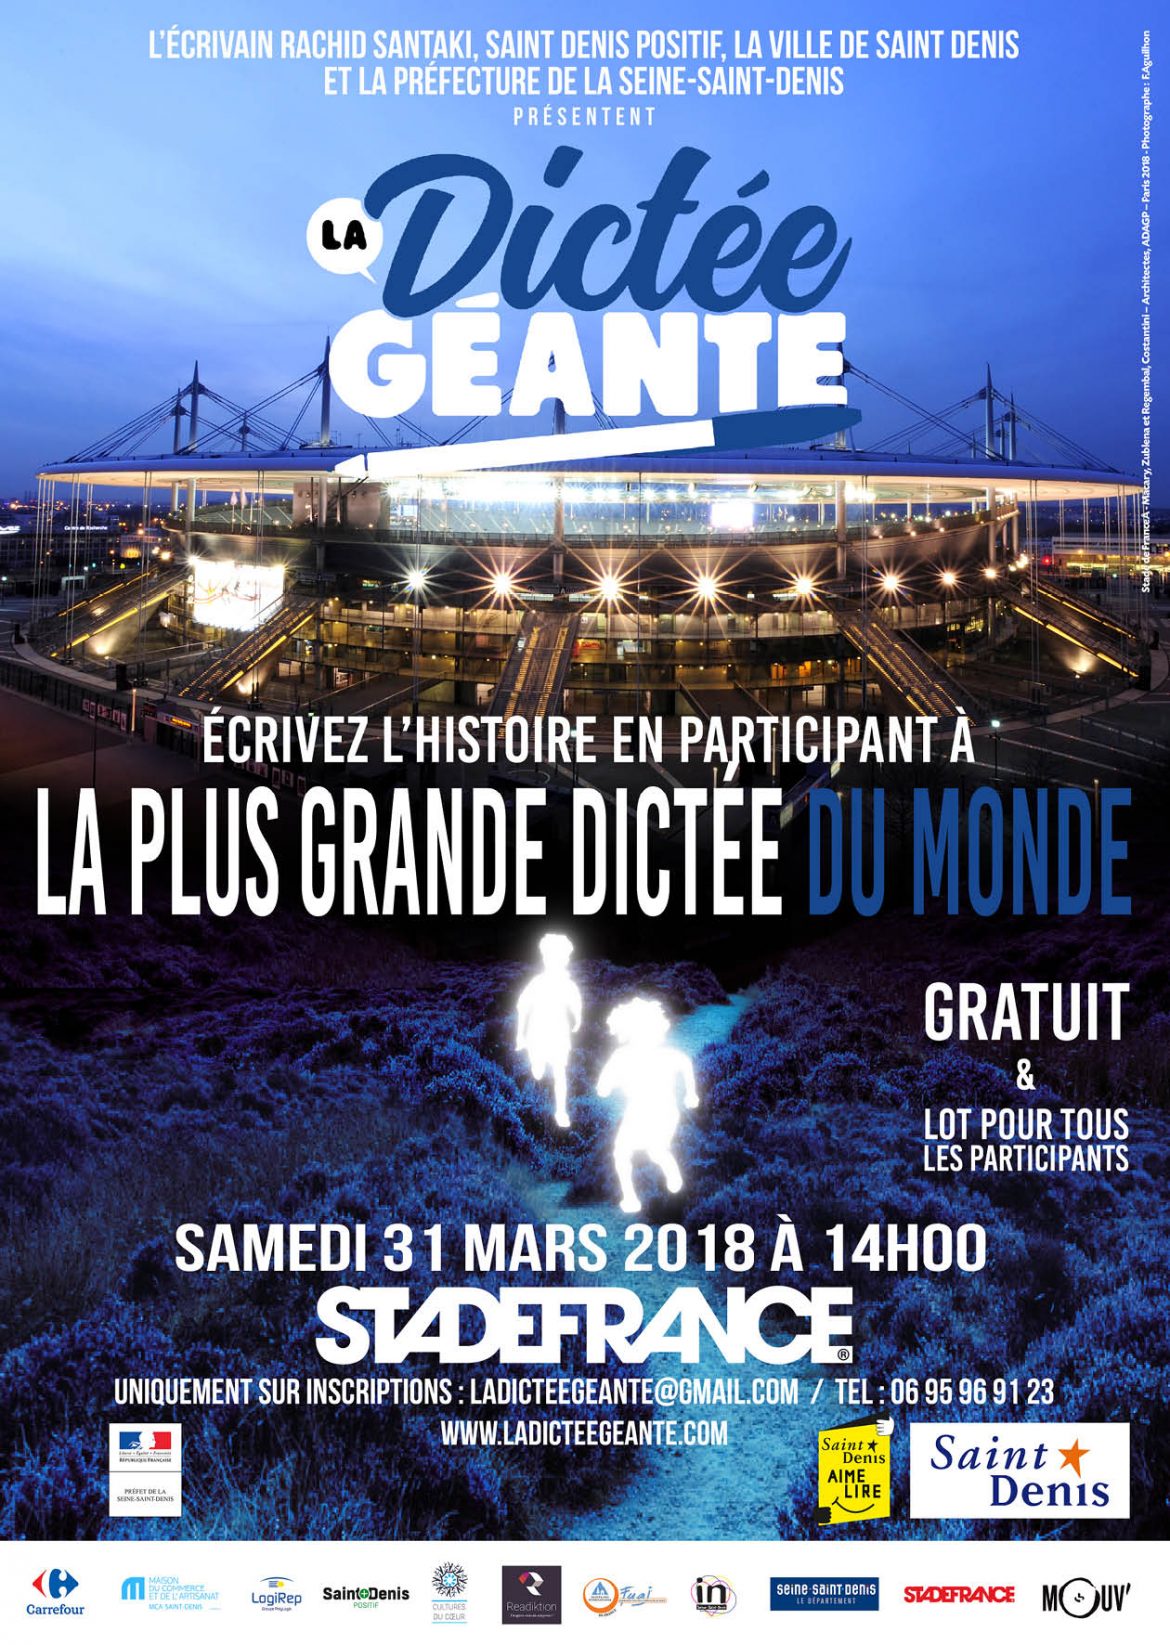 Mouv' anime "La Dictée géante" au Stade de France